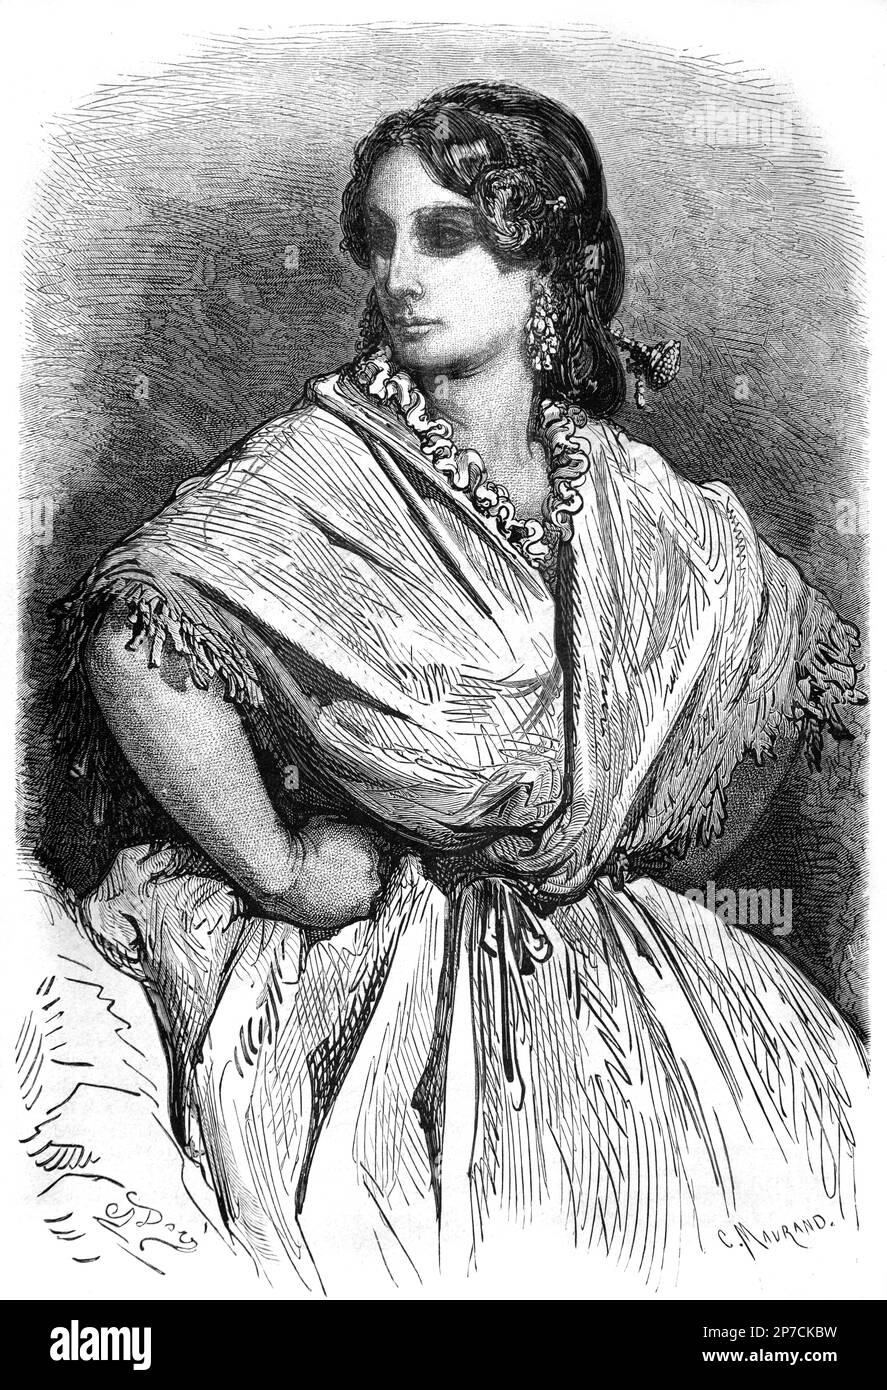 Portrait d'une femme espagnole de Valence Espagne. Gravure ou illustration vintage ou historique par Gustave doré.1862 Banque D'Images